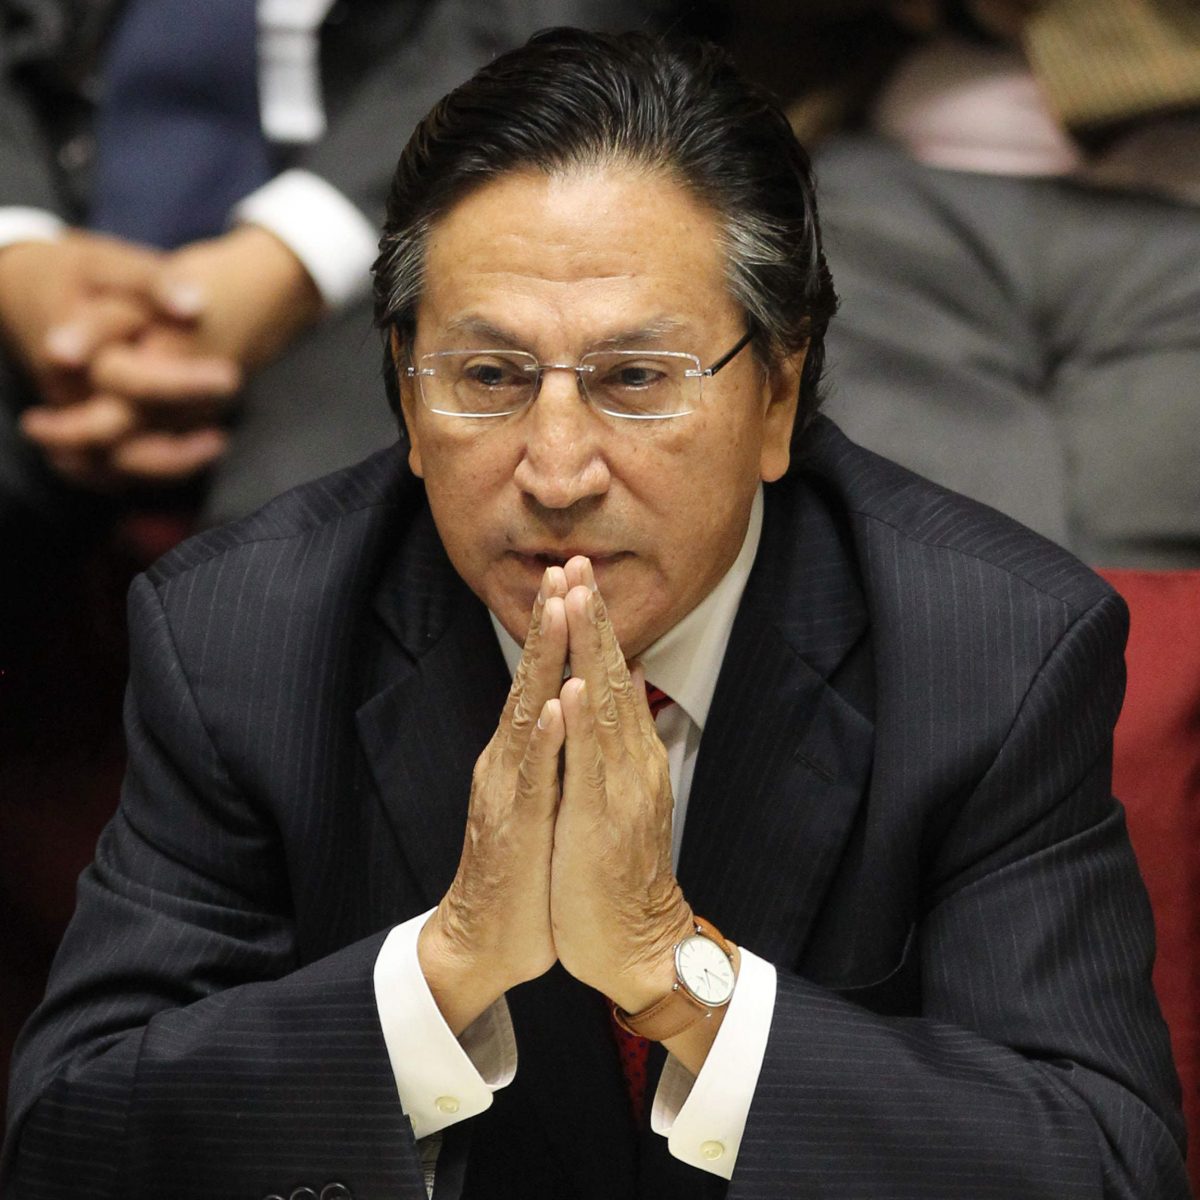 Alejandro Toledo pide a EE.UU. frenar su extradición a Perú